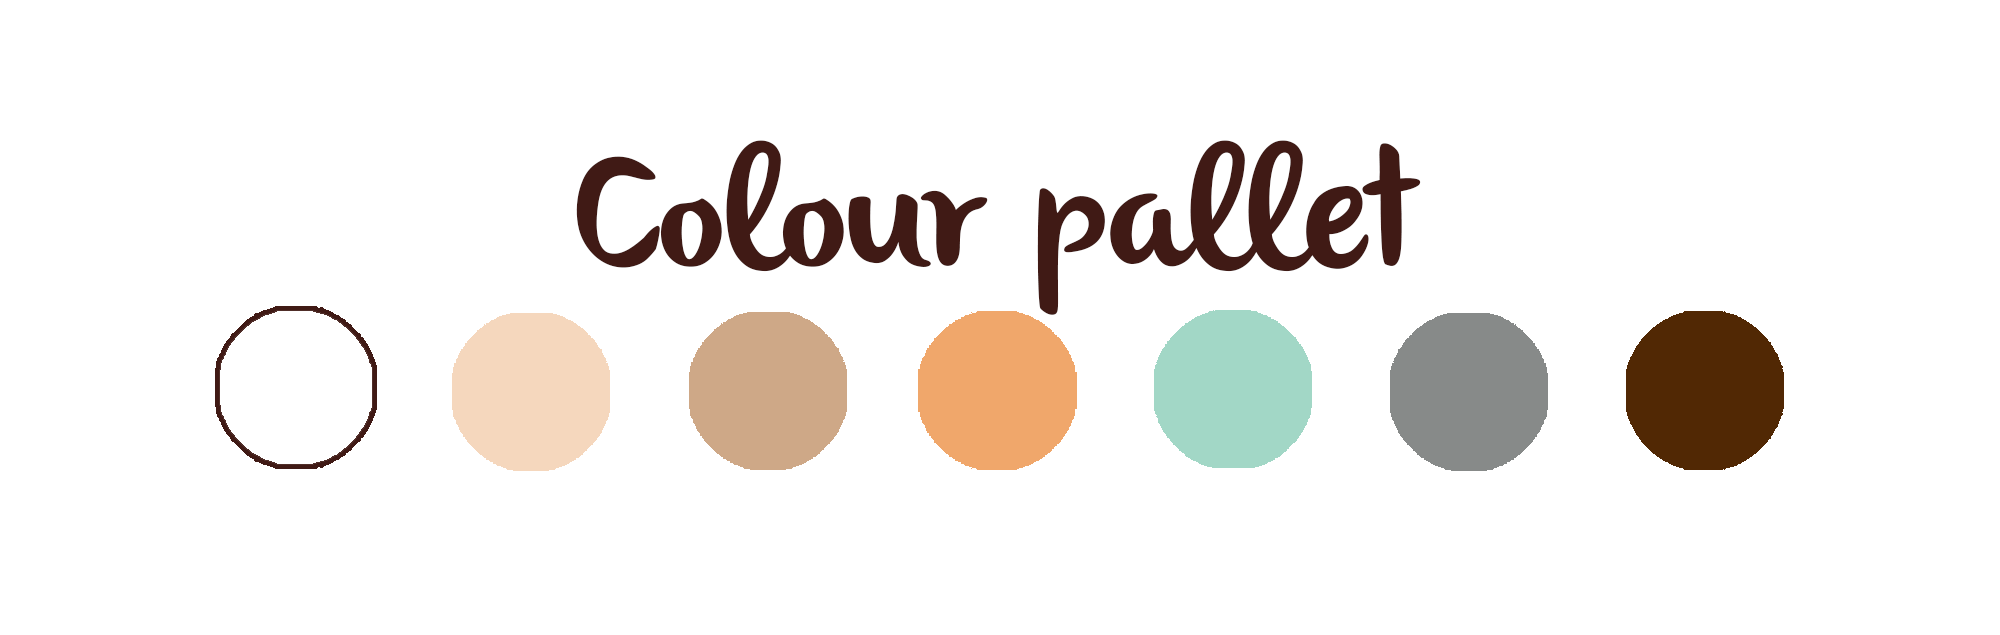 Summer Harvest Colour Pallet